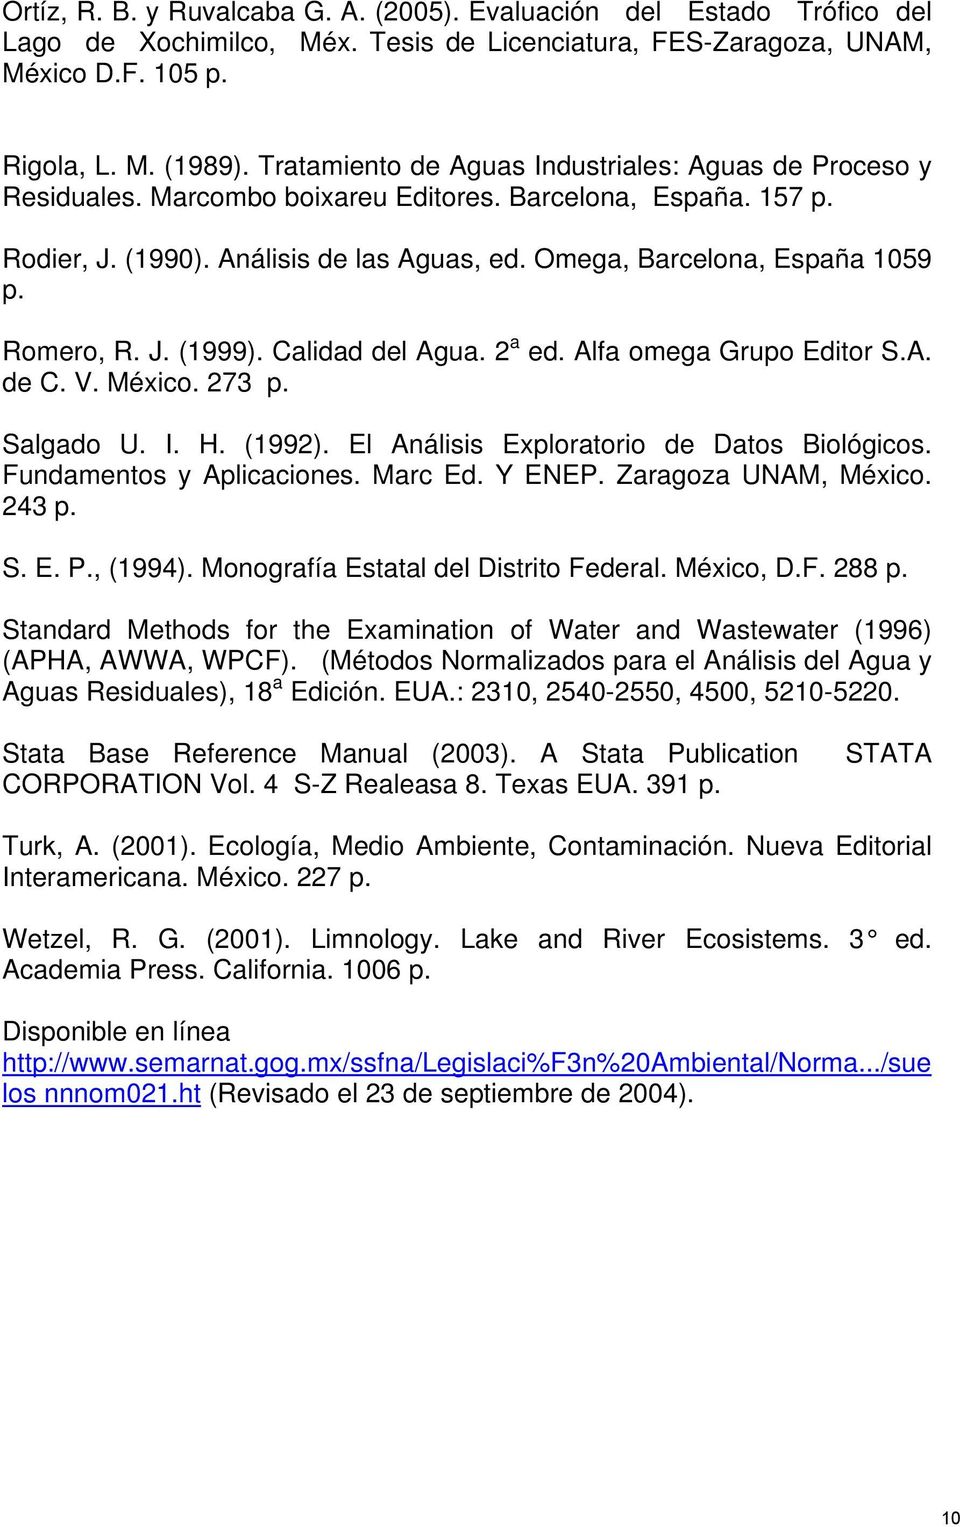 Romero, R. J. (1999). Calidad del Agua. a ed. Alfa omega Grupo Editor S.A. de C. V. Méxio. 73 p. Salgado U. I. H. (199). El Análisis Exploratorio de Datos Biológios. Fundamentos y Apliaiones. Mar Ed.